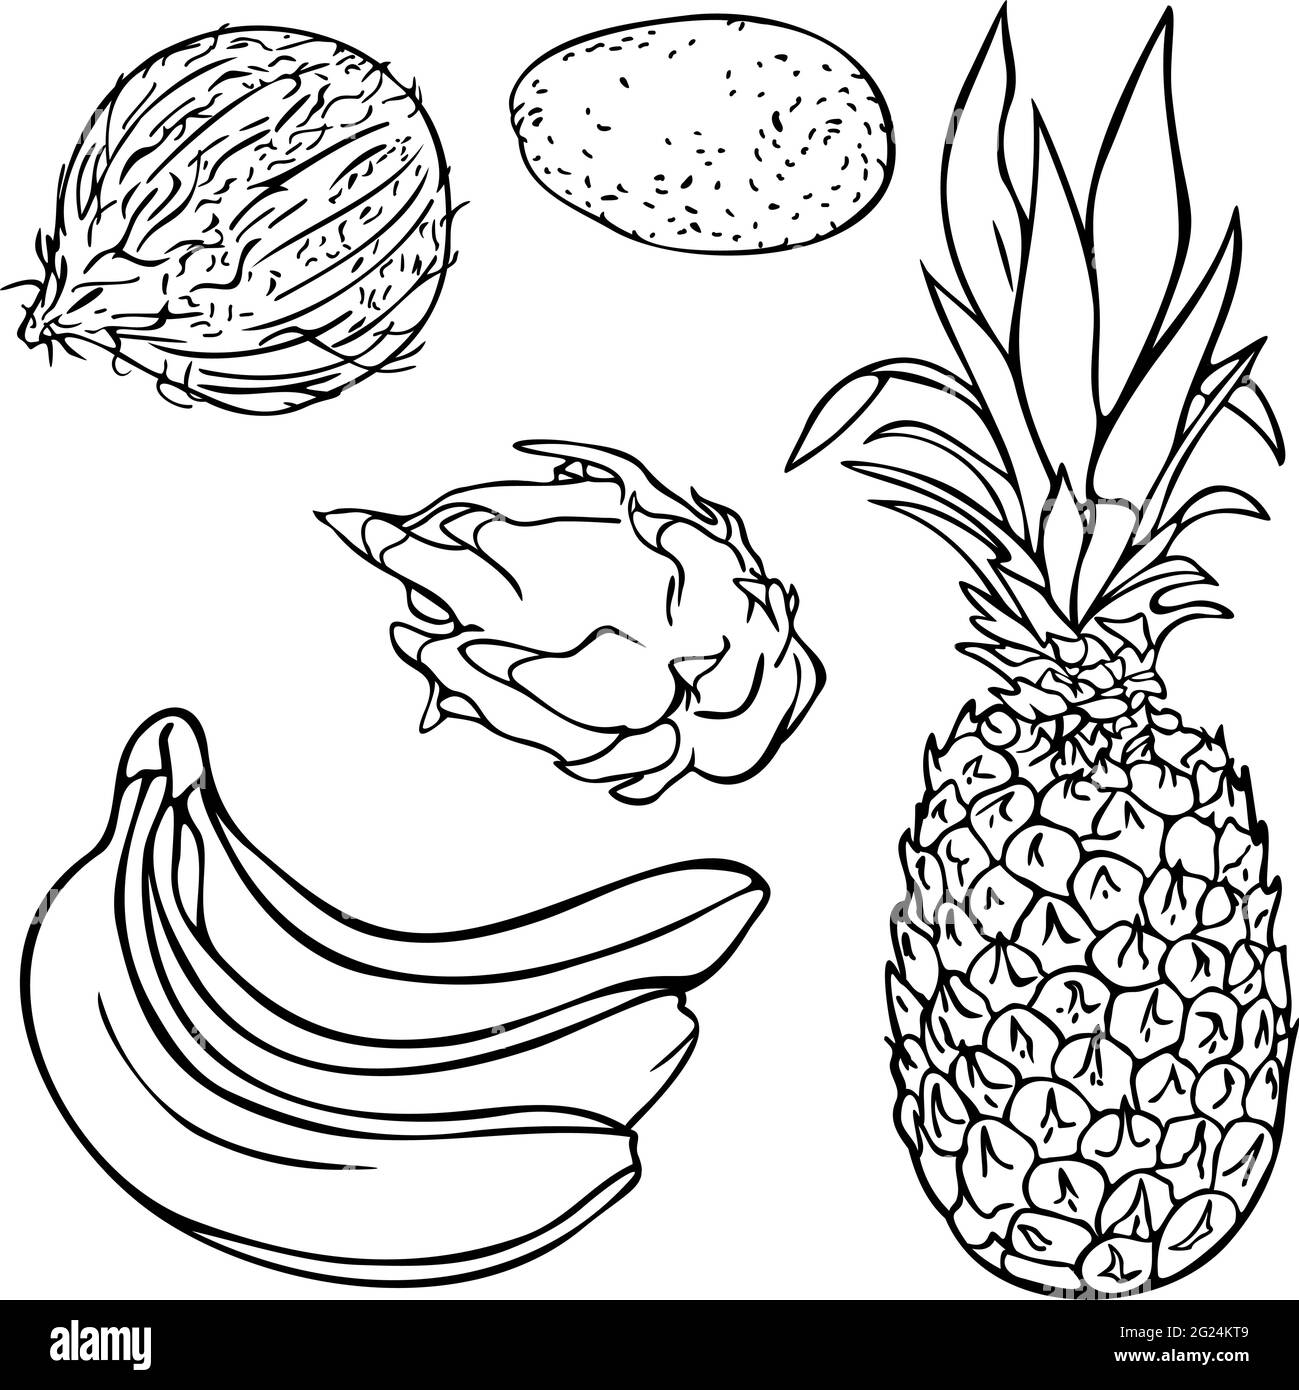 Vektor-Illustration mit Sammlung von exotischen Früchten. Set aus tropischen Früchten. Design für das ausmalen. Stock Vektor